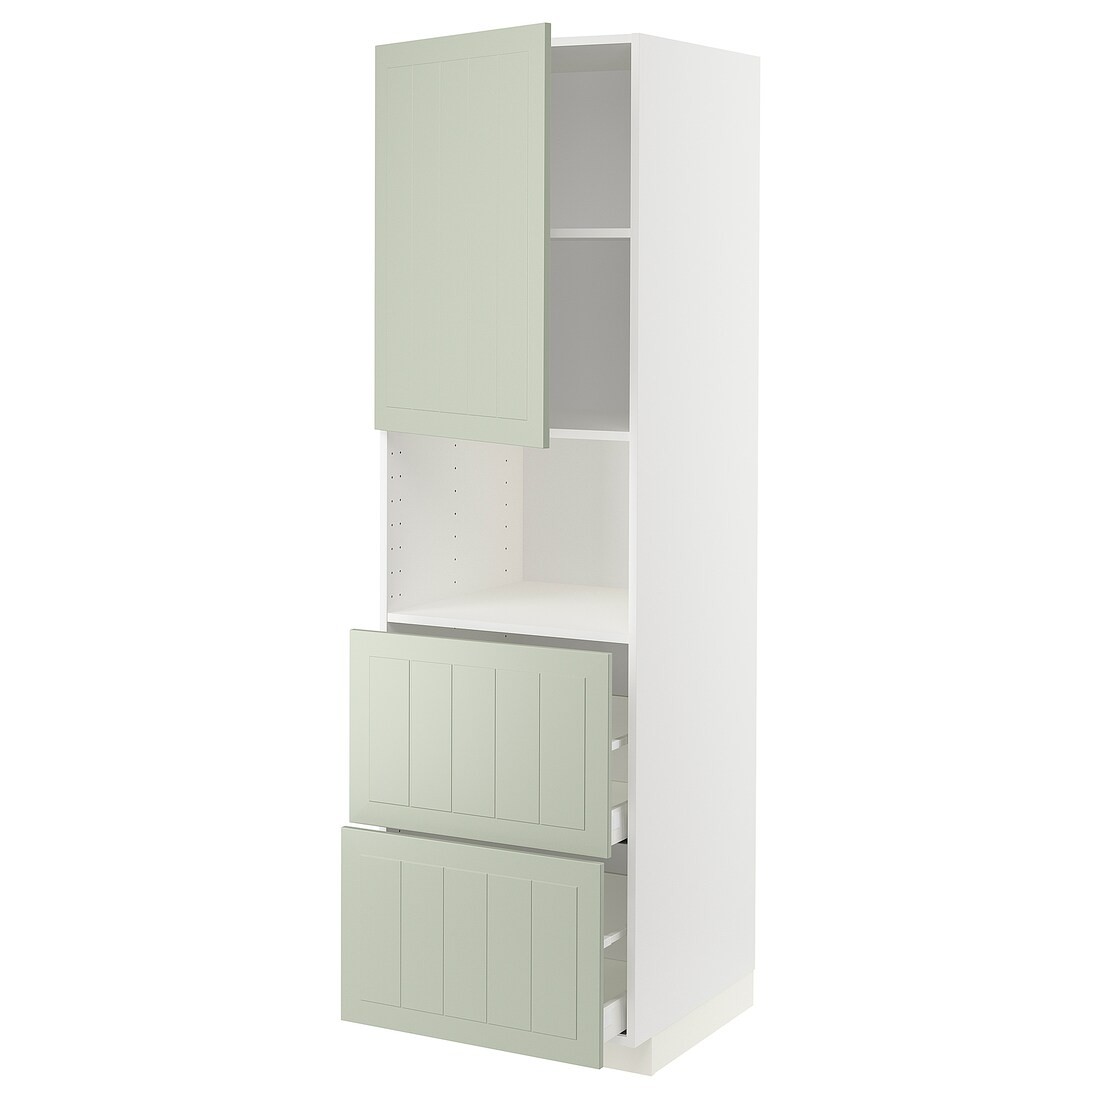 METOD МЕТОД / MAXIMERA МАКСИМЕРА Высокий шкаф для микроволновки с дверями / 2 ящика, белый / Stensund светло-зеленый, 60x60x200 см